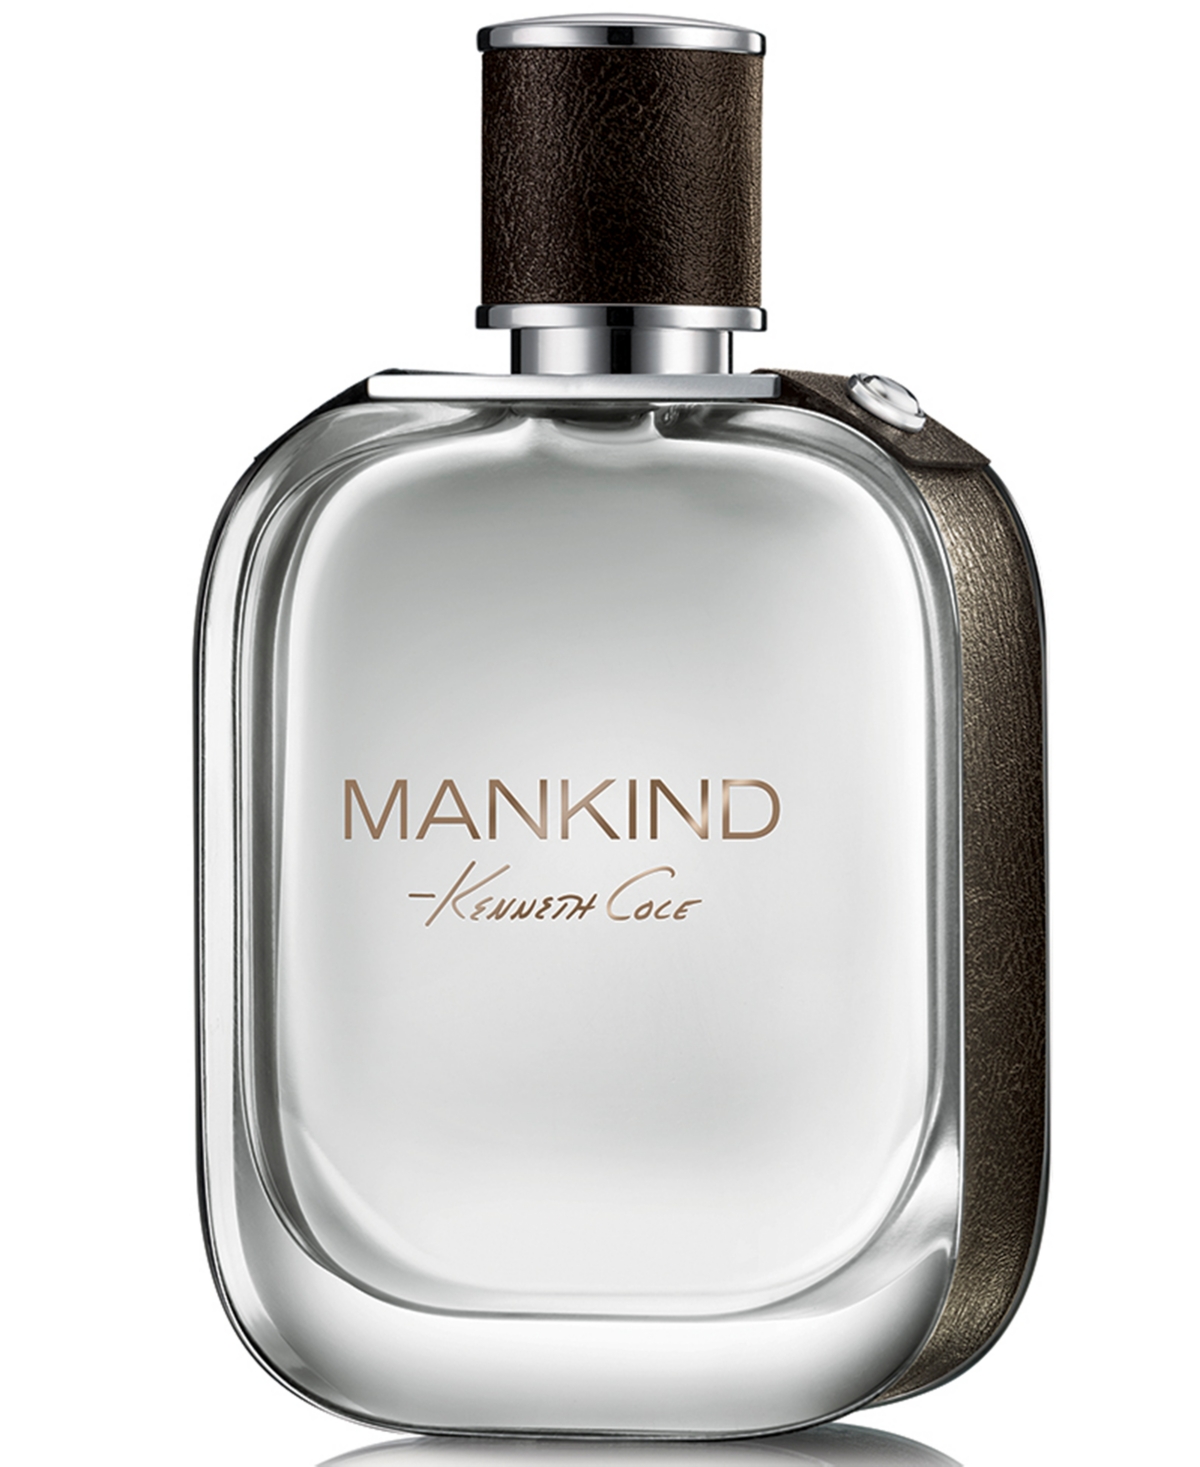 Mankind Men's Eau de Toilette Spray, 1.7 oz.